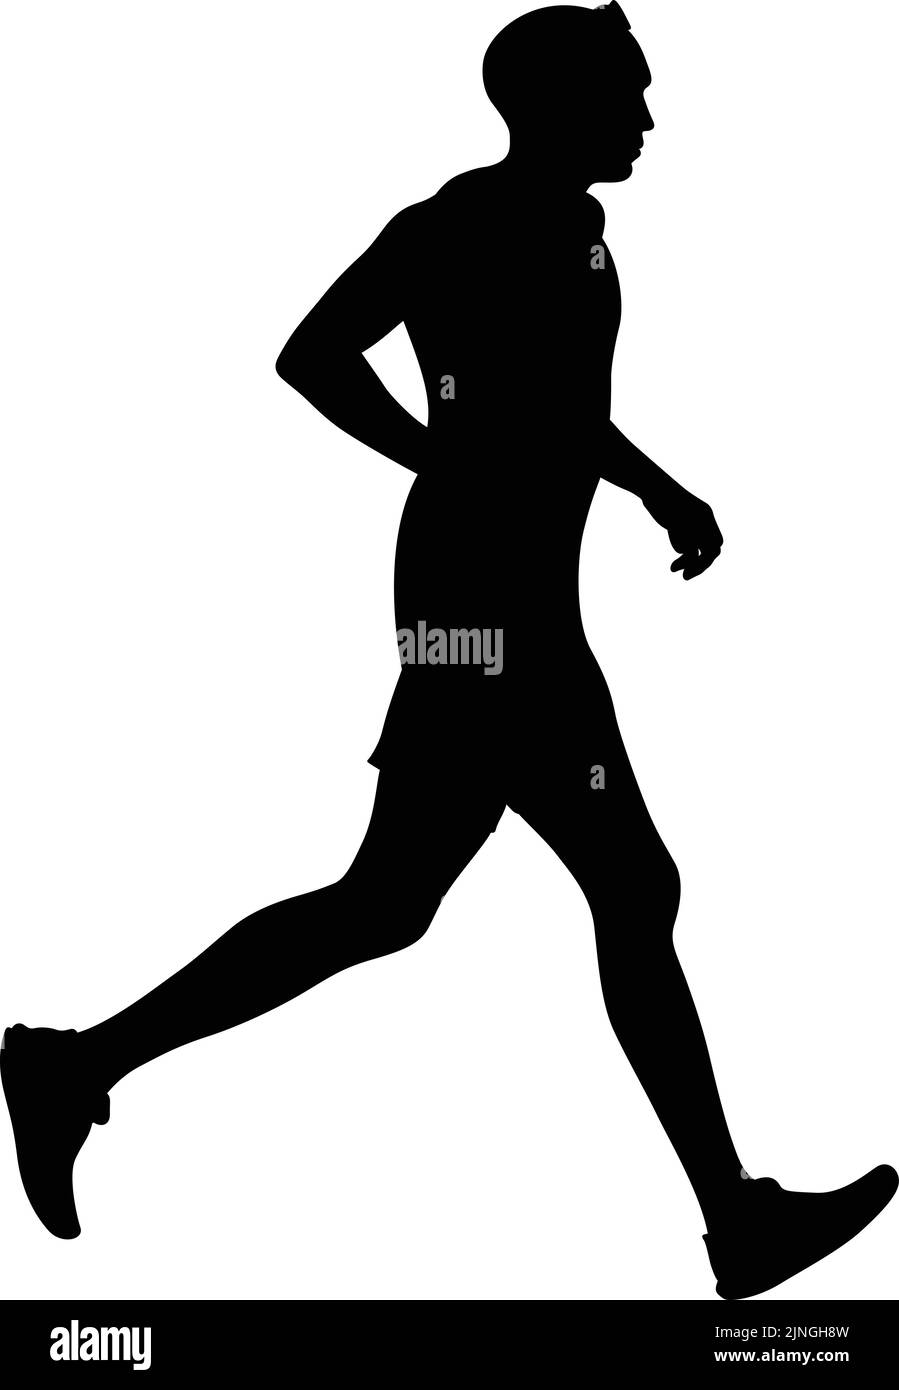 runner athlete running black silhouette Stock Vector